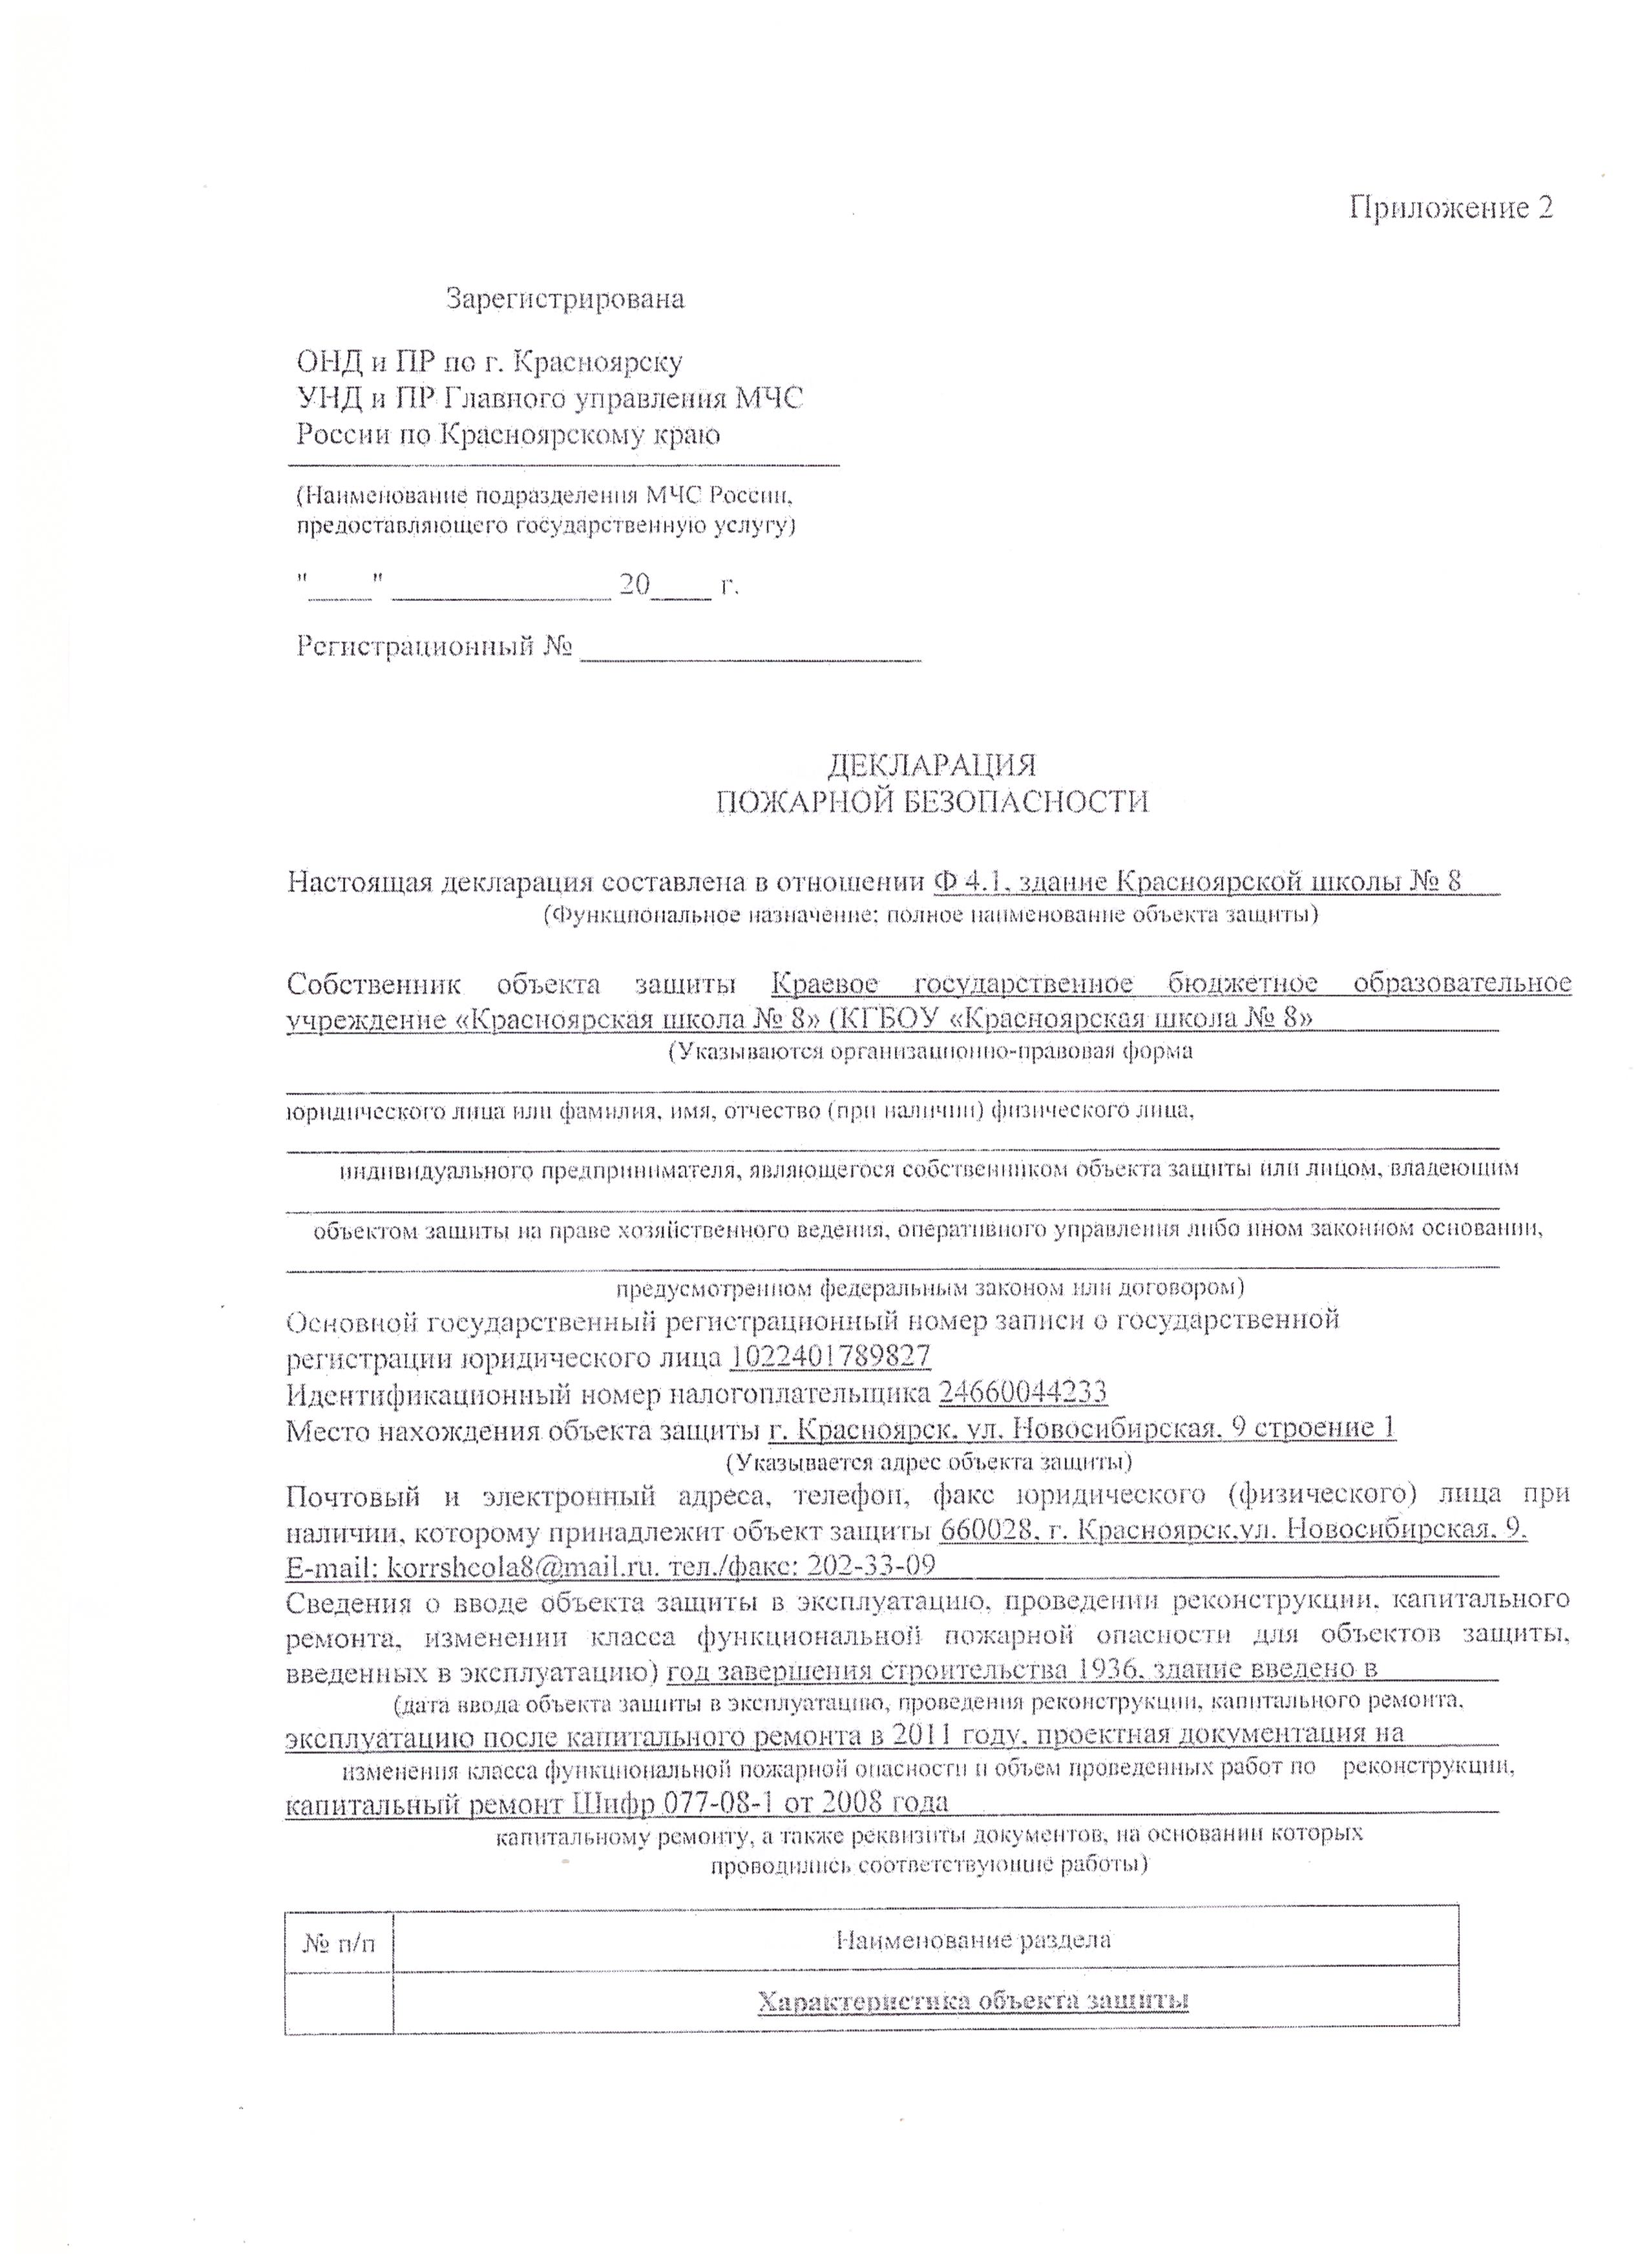 Мчс россии декларация пожарной безопасности